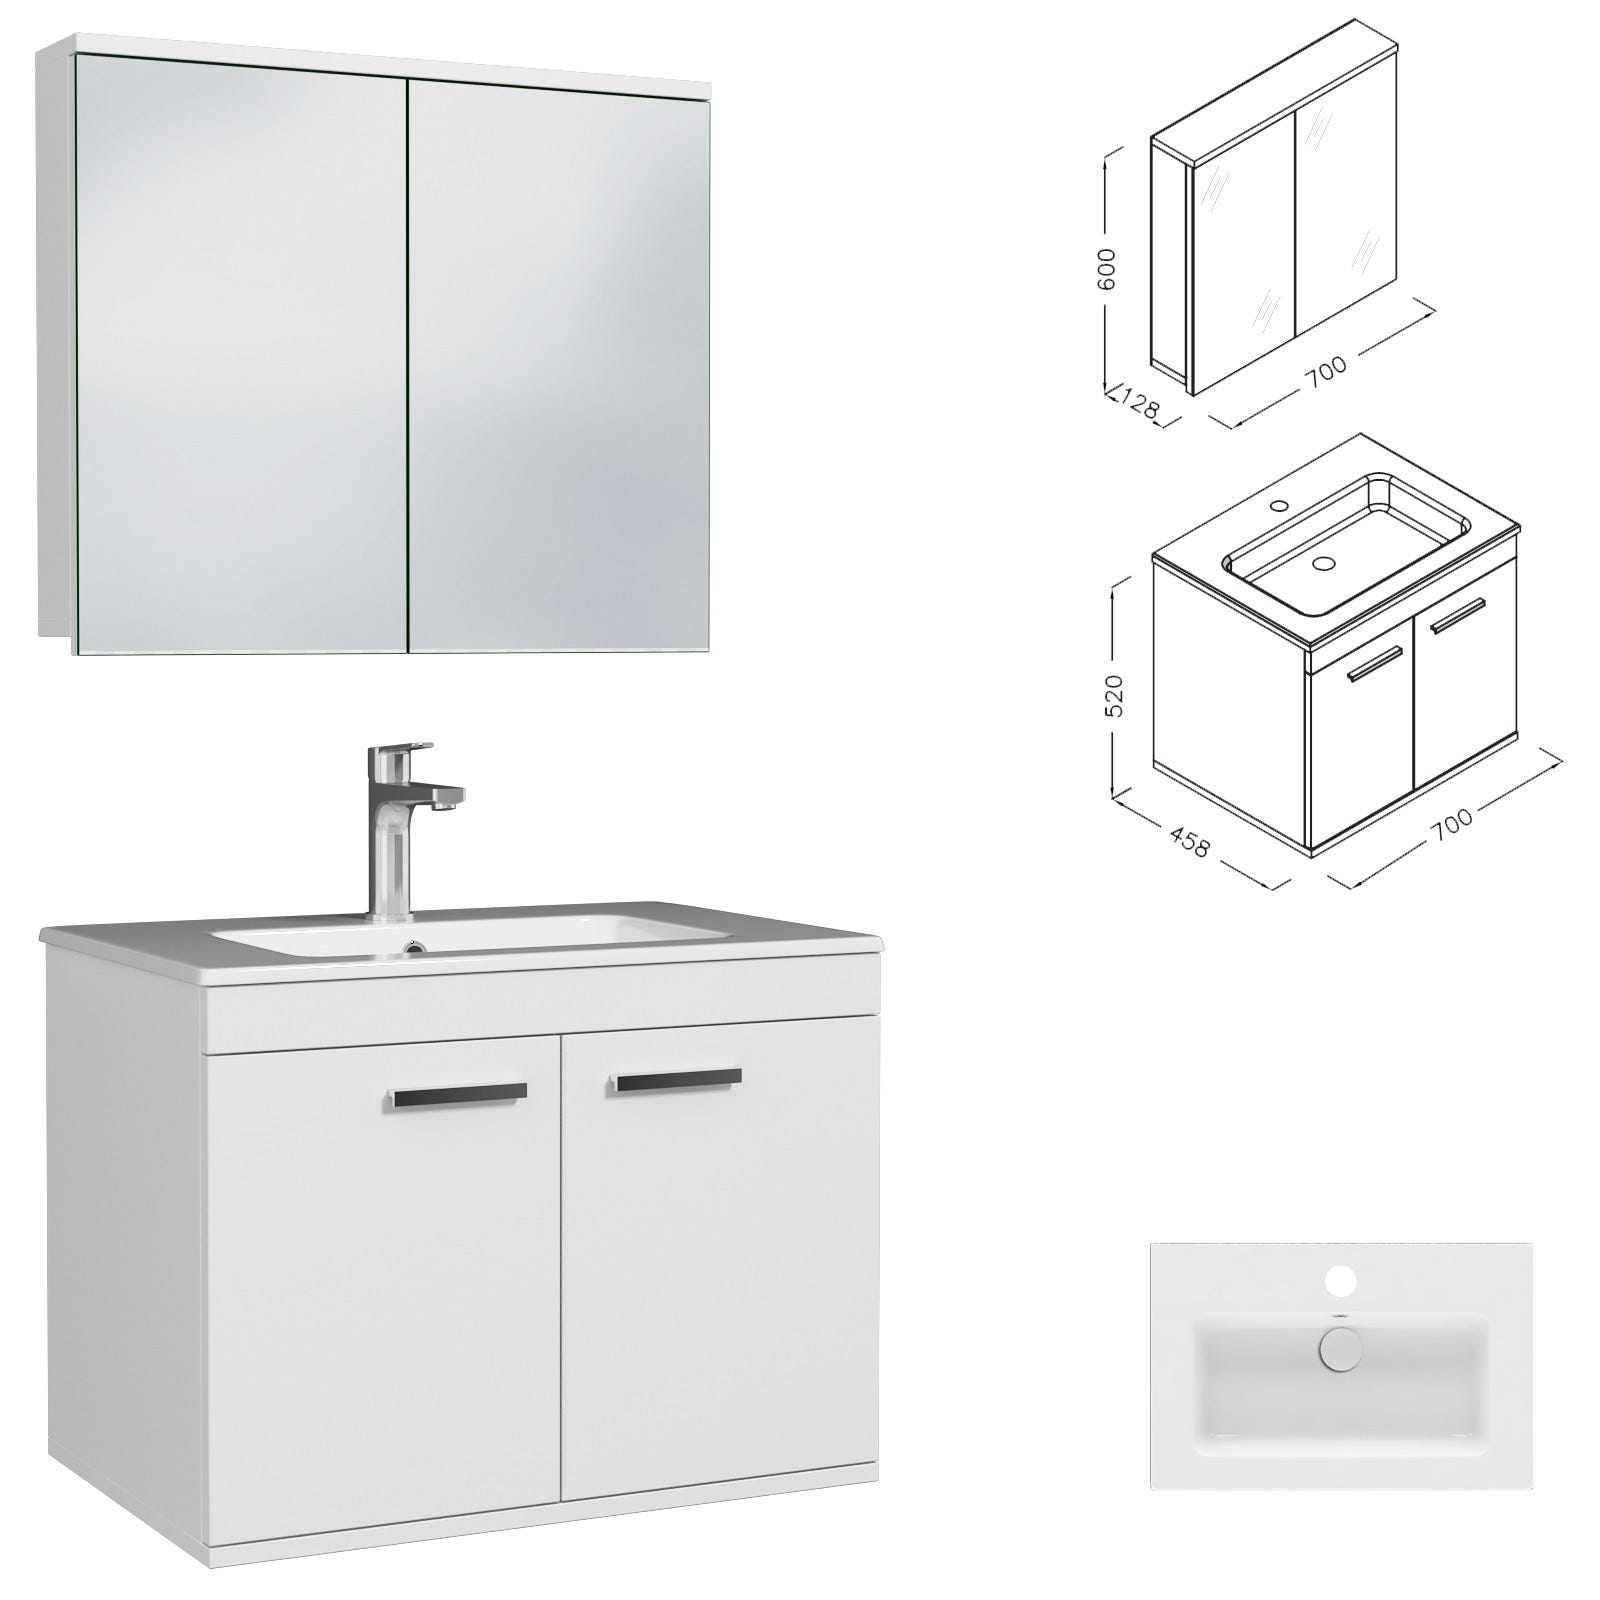 RUBITE Meuble salle de bain simple vasque 2 portes blanc largeur 70 cm + miroir armoire 2